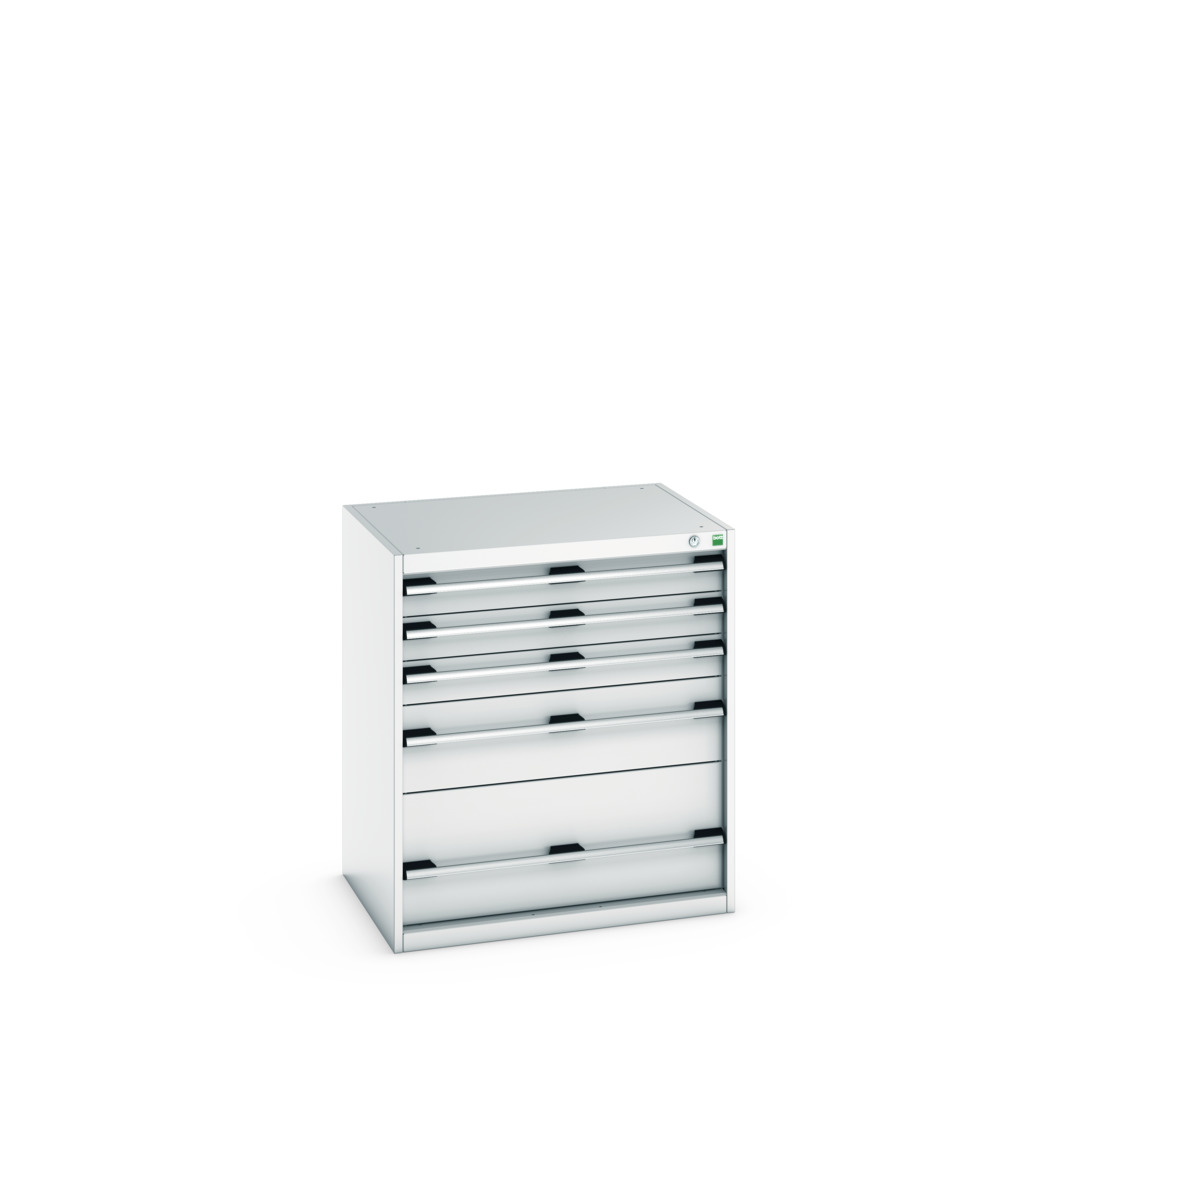 40020035.16V - cubio drawer cabinet